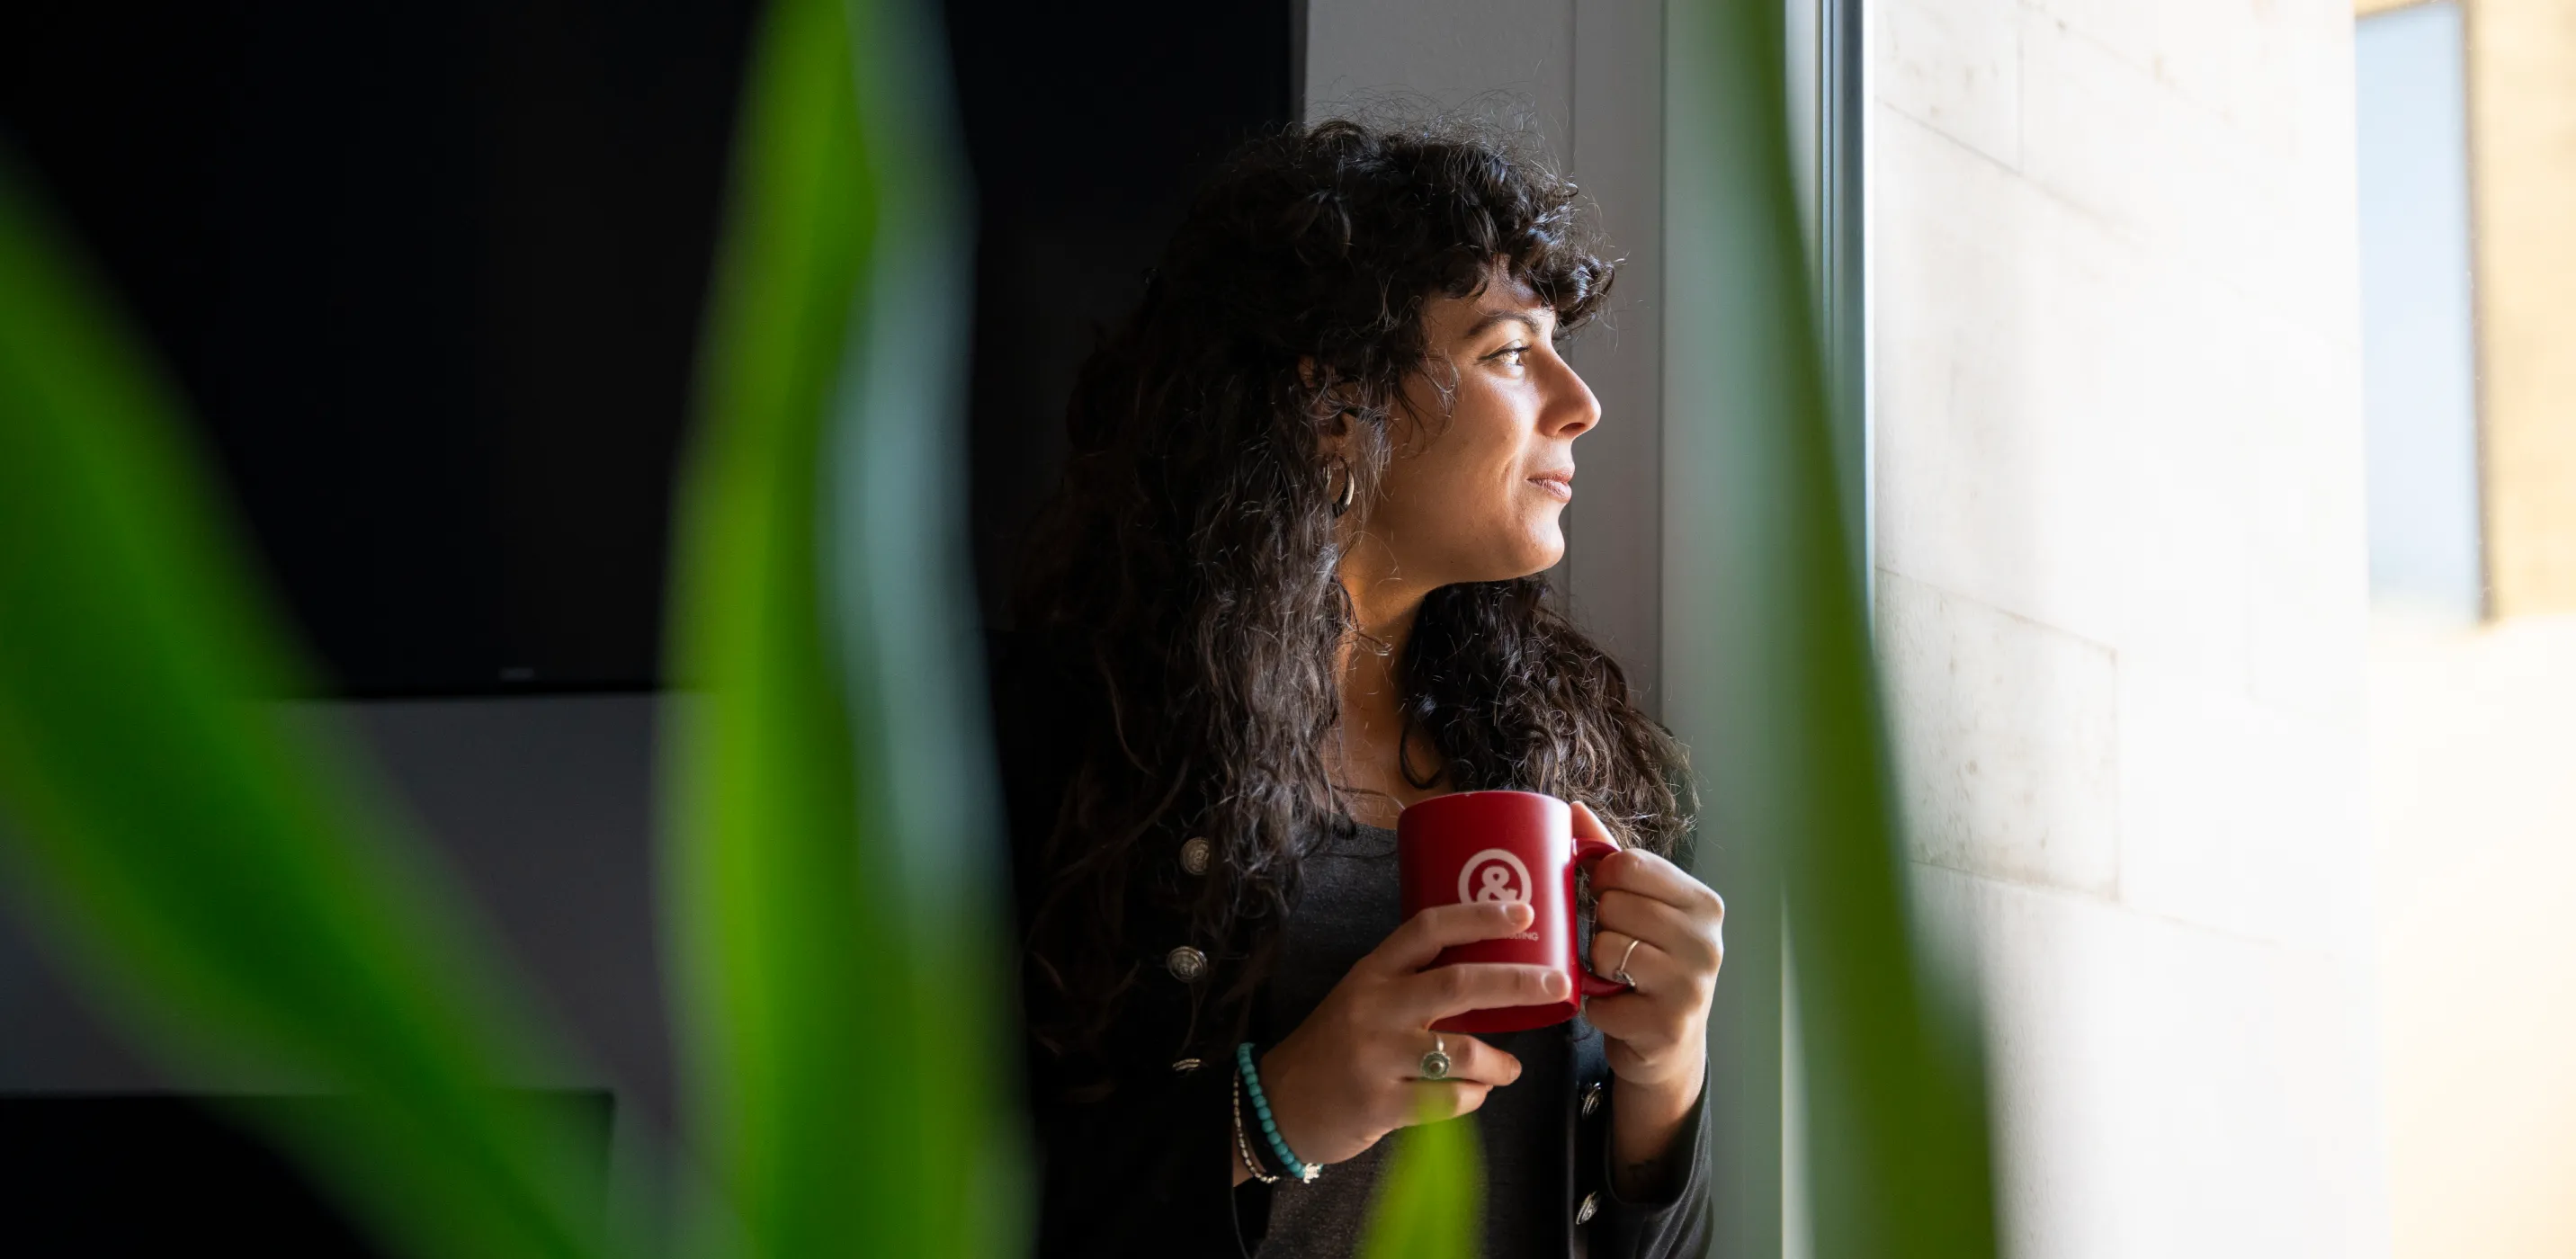 immagine di una ragazza che beve un caffè durante una pausa e guarda da una finestra verso l'esterno